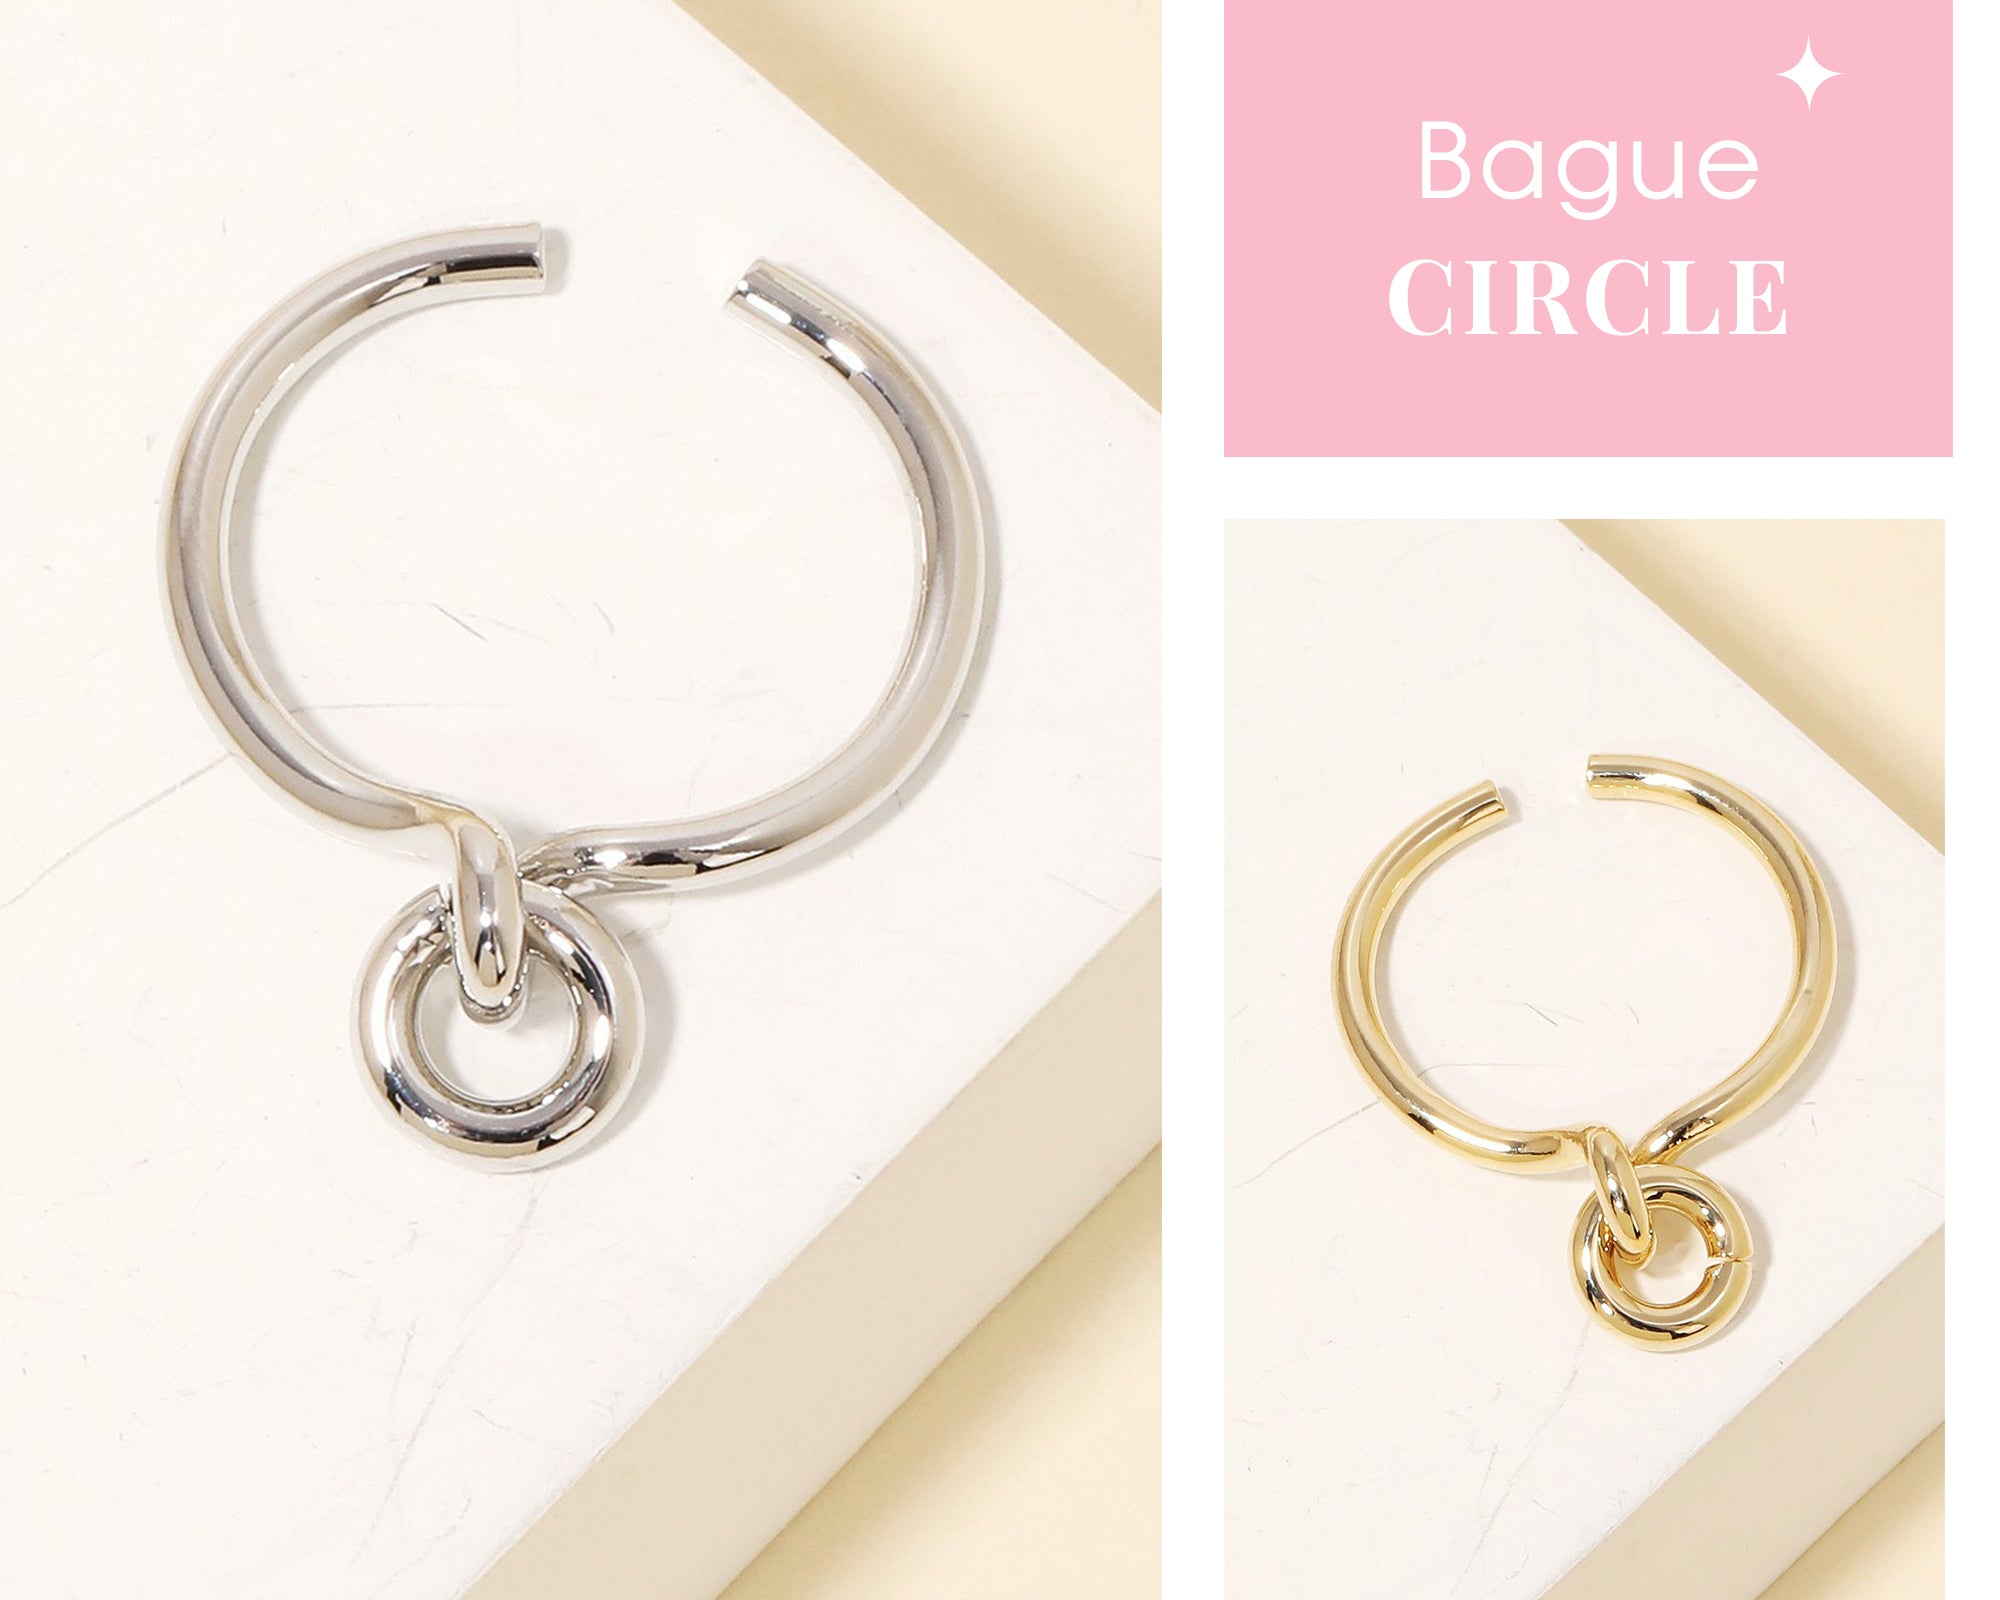 Bague Circle